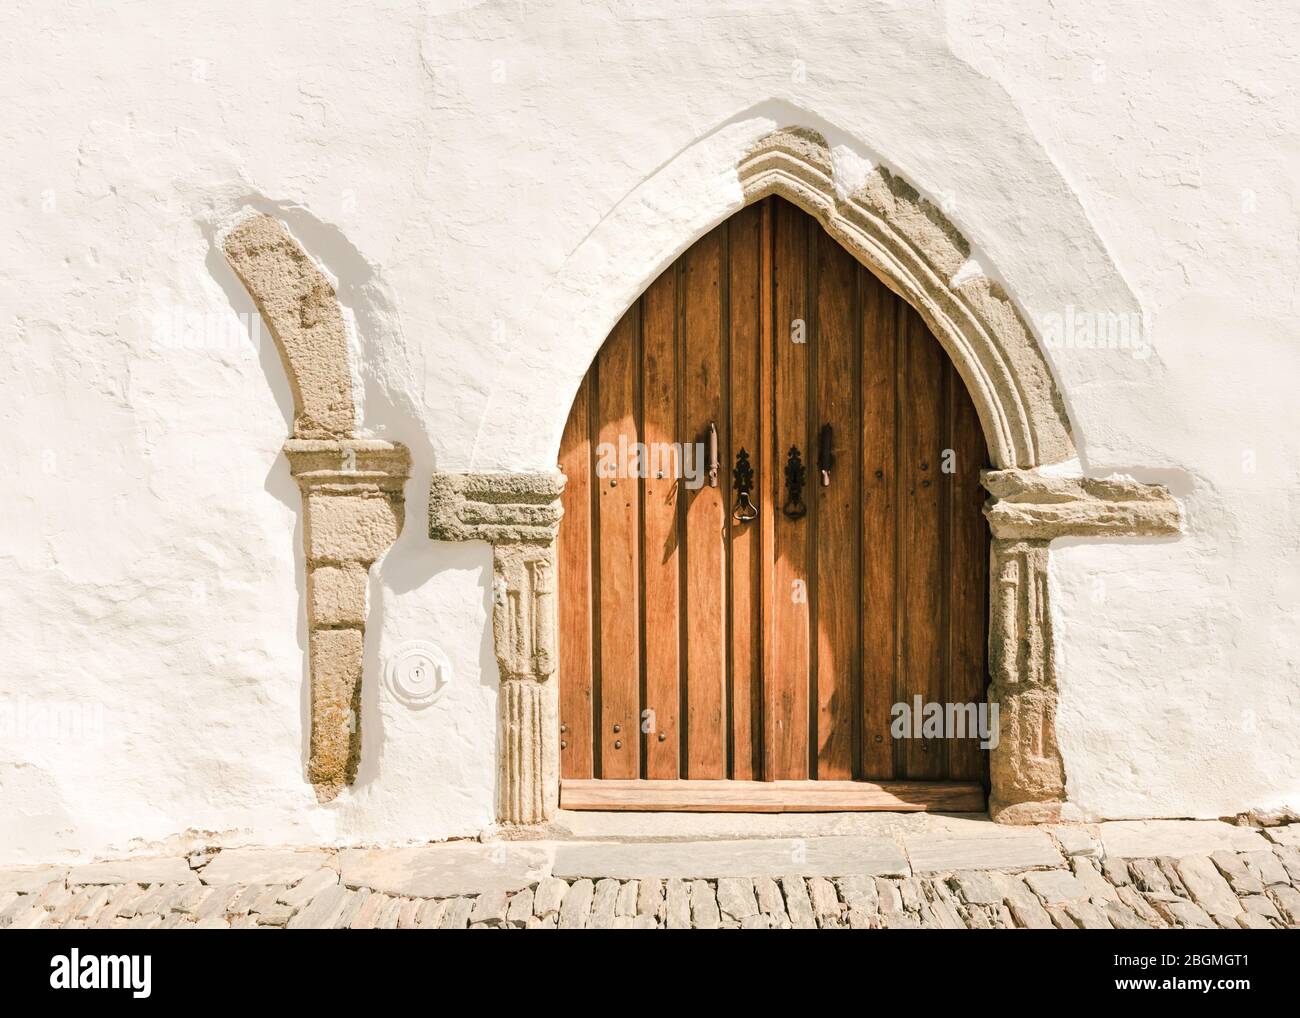 Belle porte médiévale sous forme d'arche, entourée par les murs blanchis à la chaux traditionnels du village pittoresque de Monsaraz, Portugal Banque D'Images